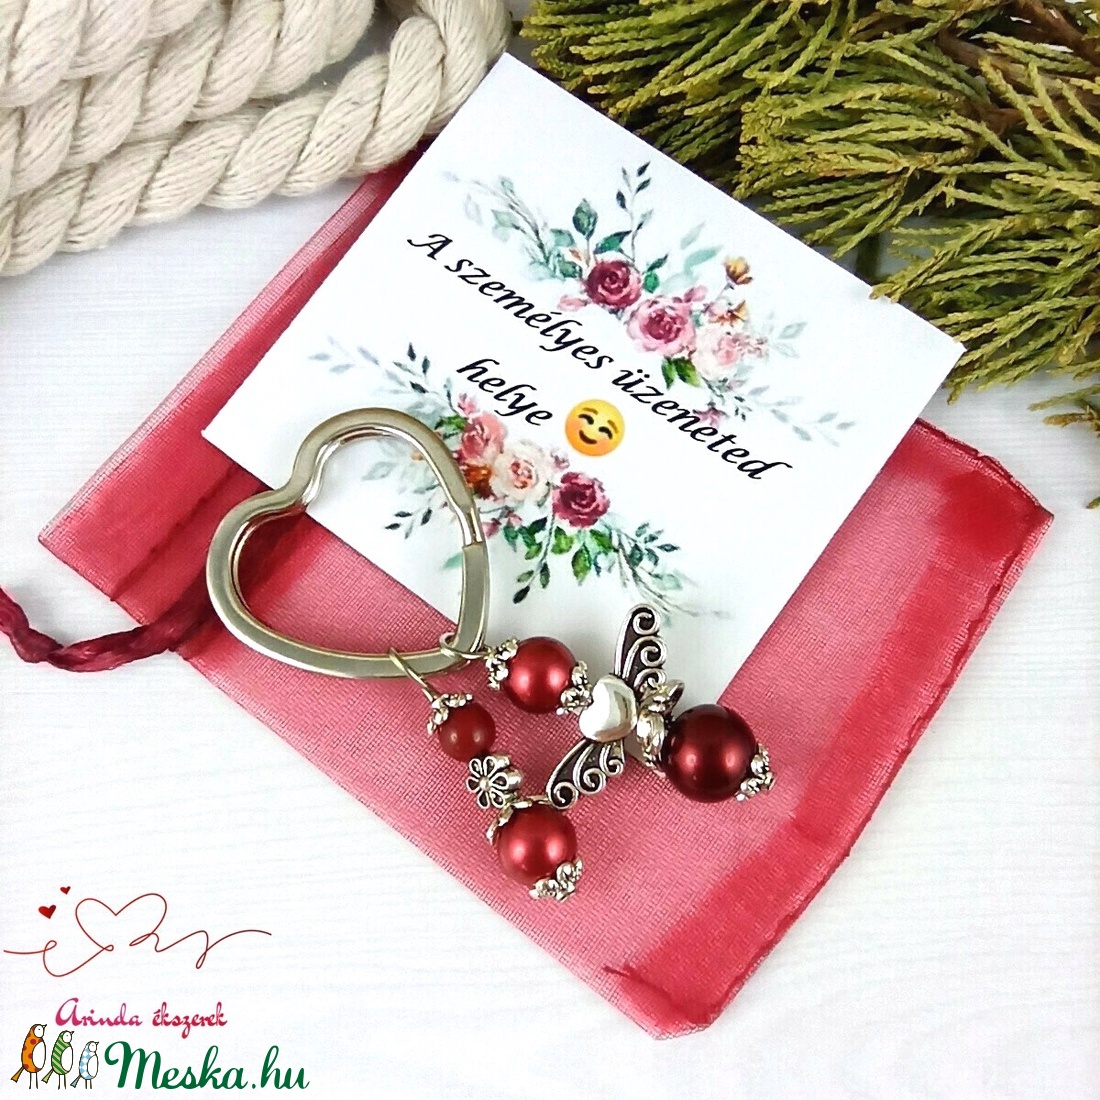 Piros angyalkás szív kulcstartó táskadísz ajándékcsomagolással anyák napja ballagás évzáró pedagógus karácsony szülinap - táska & tok - kulcstartó & táskadísz - kulcstartó - Meska.hu